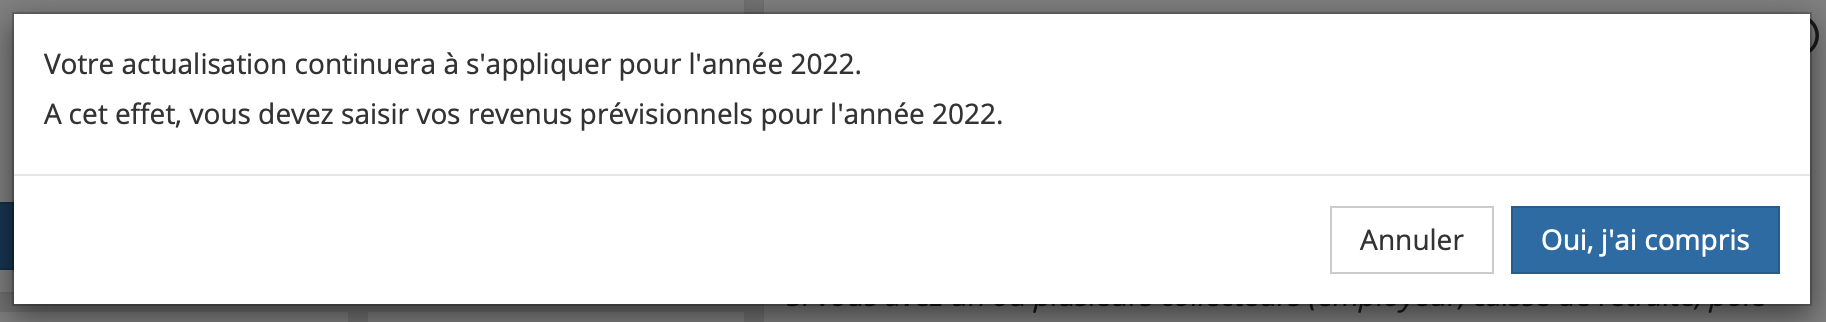 Impt 2022